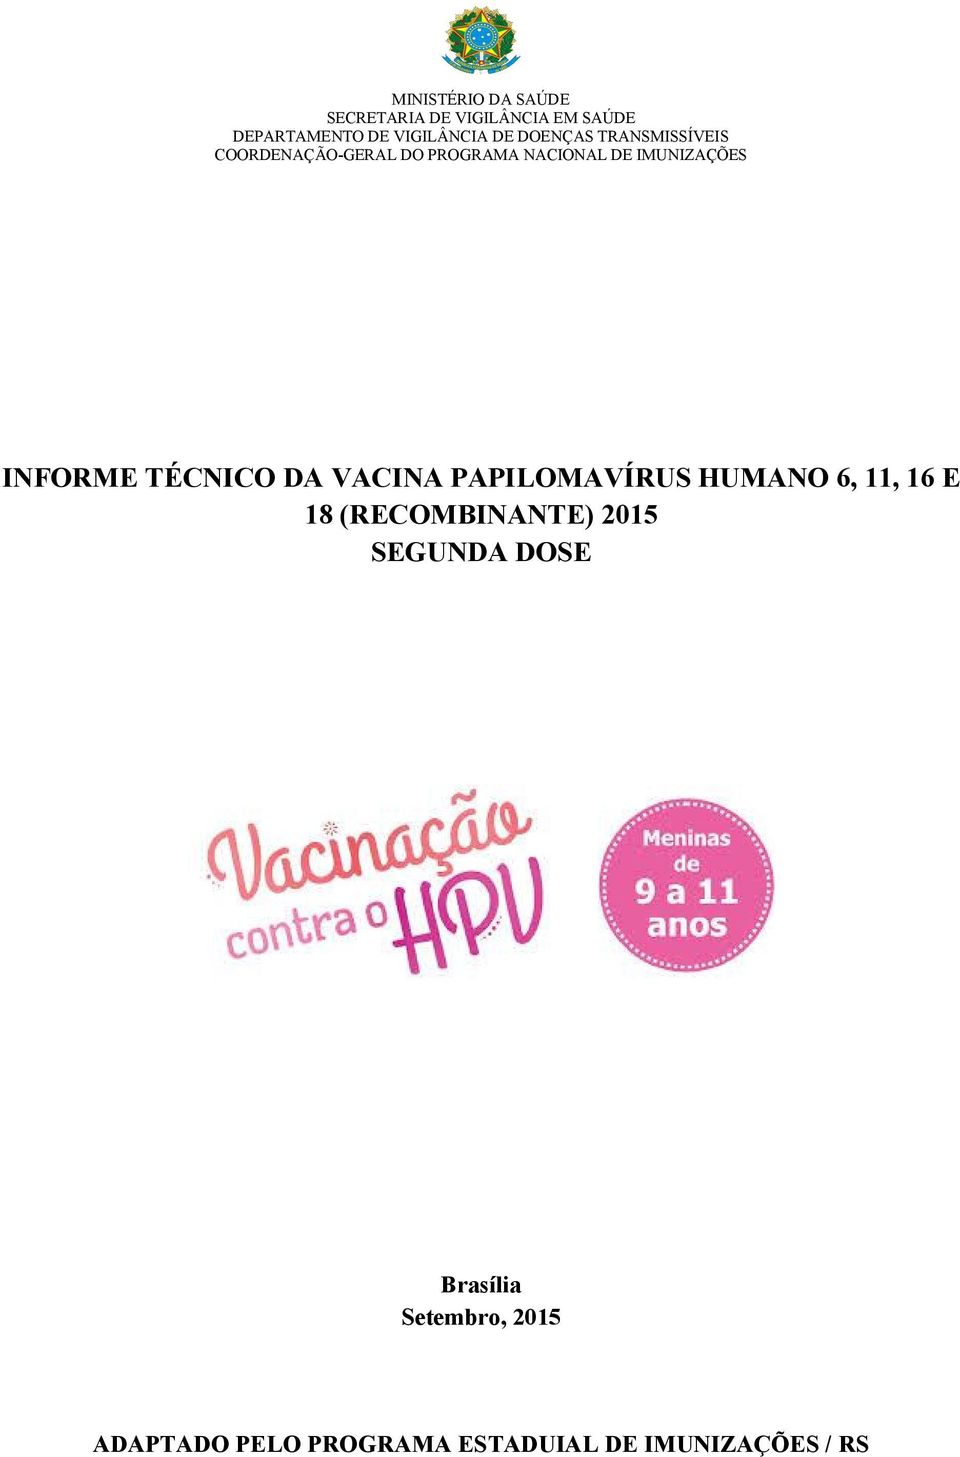 INFORME TÉCNICO DA VACINA PAPILOMAVÍRUS HUMANO 6, 11, 16 E 18 (RECOMBINANTE) 2015